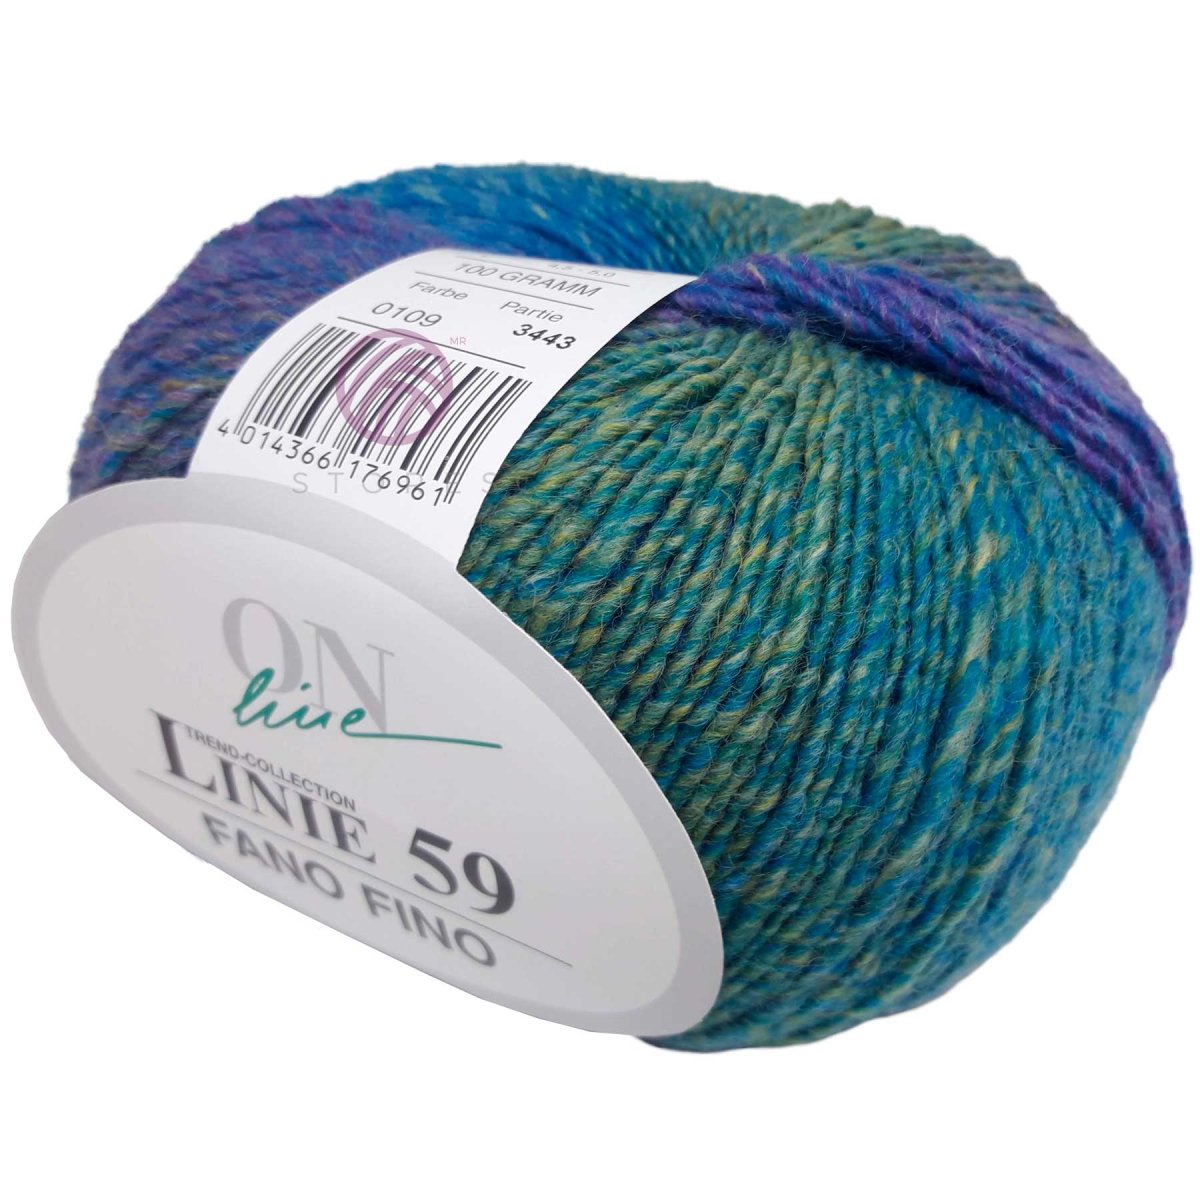 FANO FINO - Crochetstores110059-1014014366172253